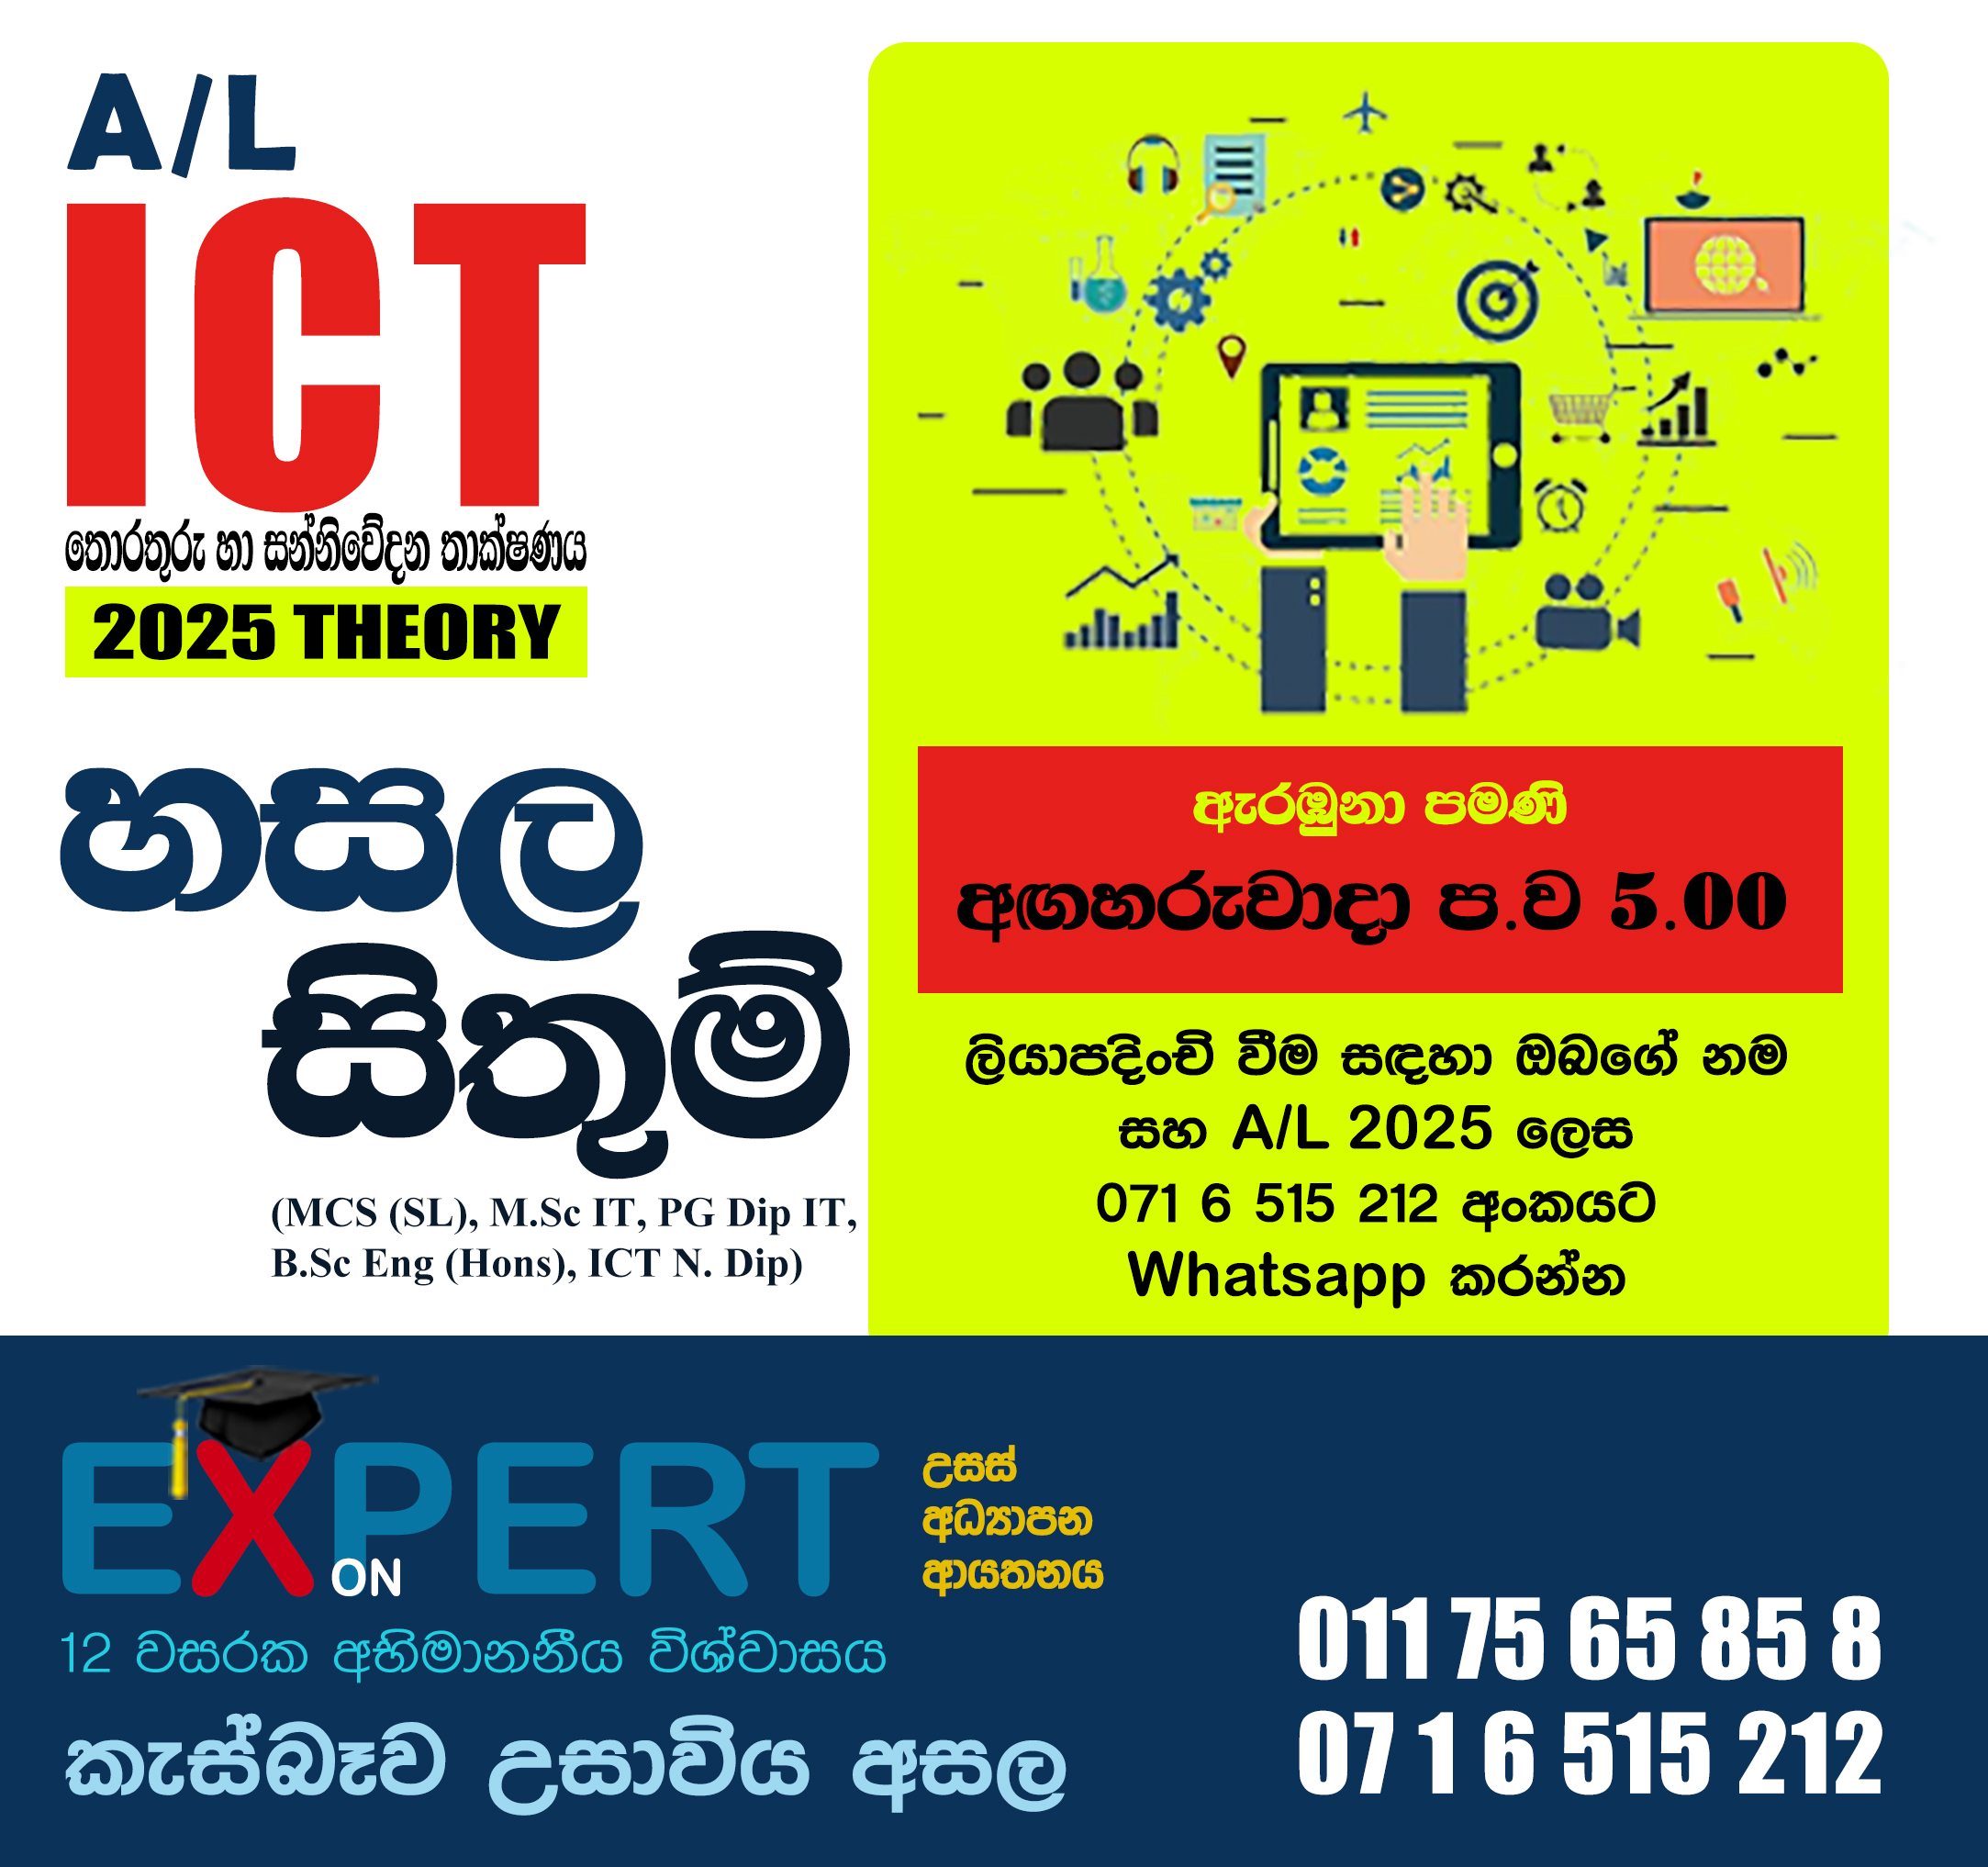 A/L ICT 2025 Hasala Sithum